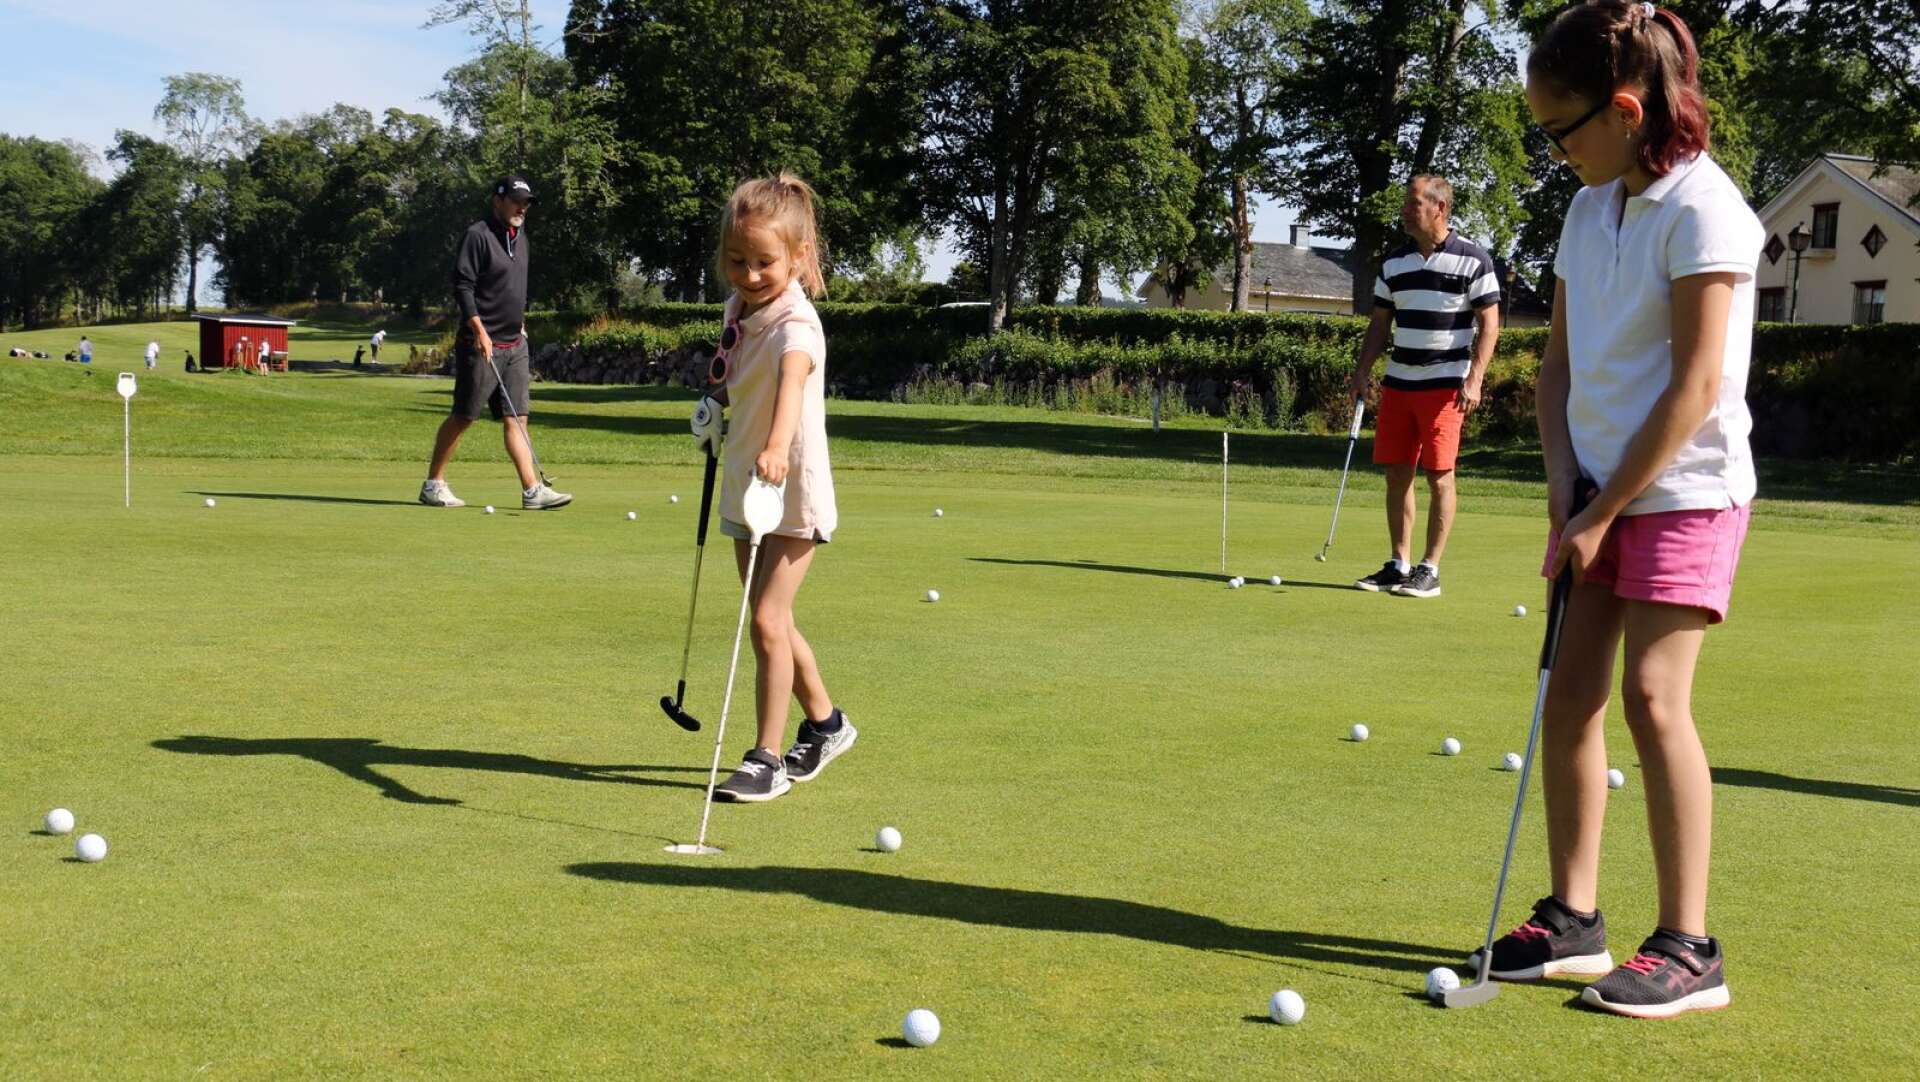 Saxå golfklubb arrangerar golfträning och lek för sommarlovslediga barn och ungdomar.